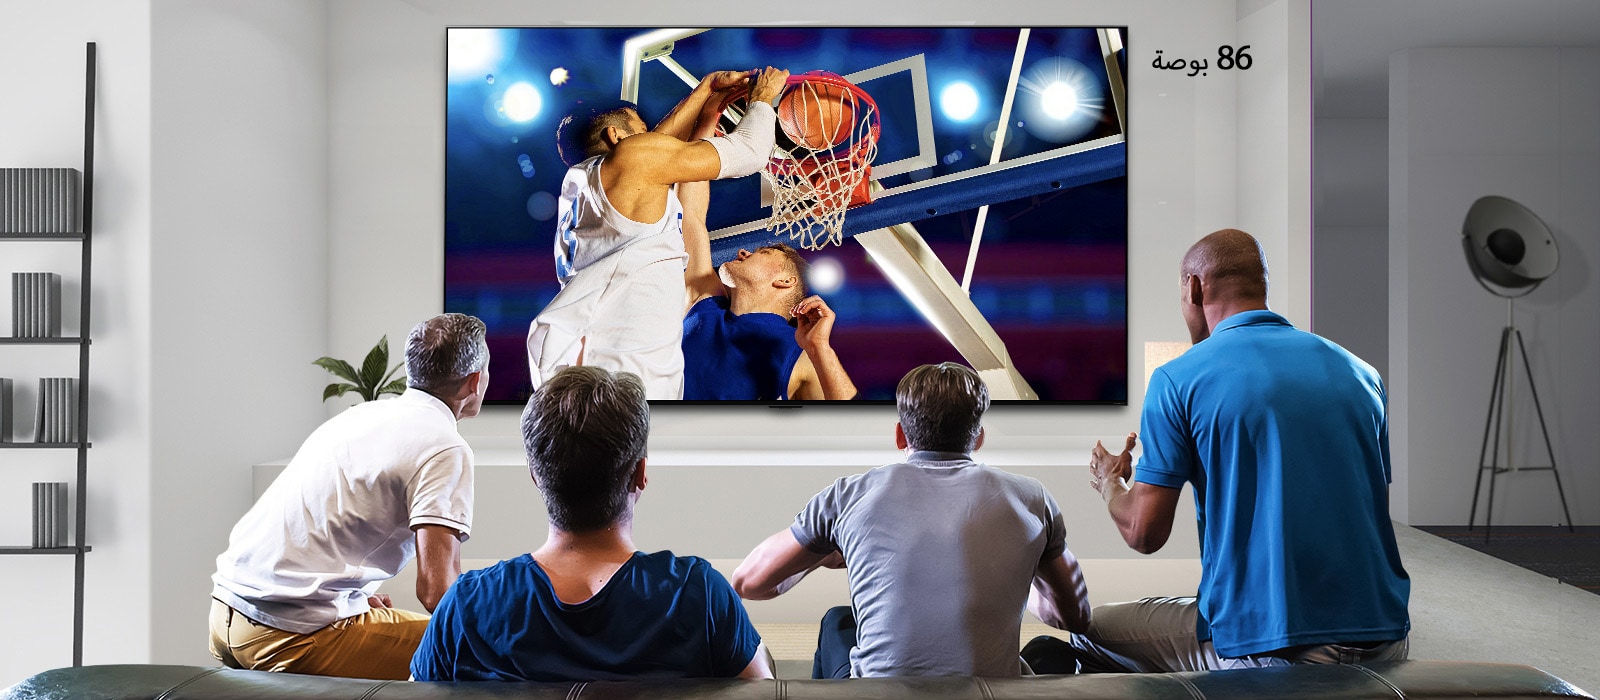 منظر خلفي لتلفزيون معلق على الجدار يعرض مباراة كرة سلة يشاهدها أربعة رجال. يُظهر التمرير من اليسار إلى اليمين الفرق في الحجم بين الشاشة مقاس 43 بوصة و86 بوصة.